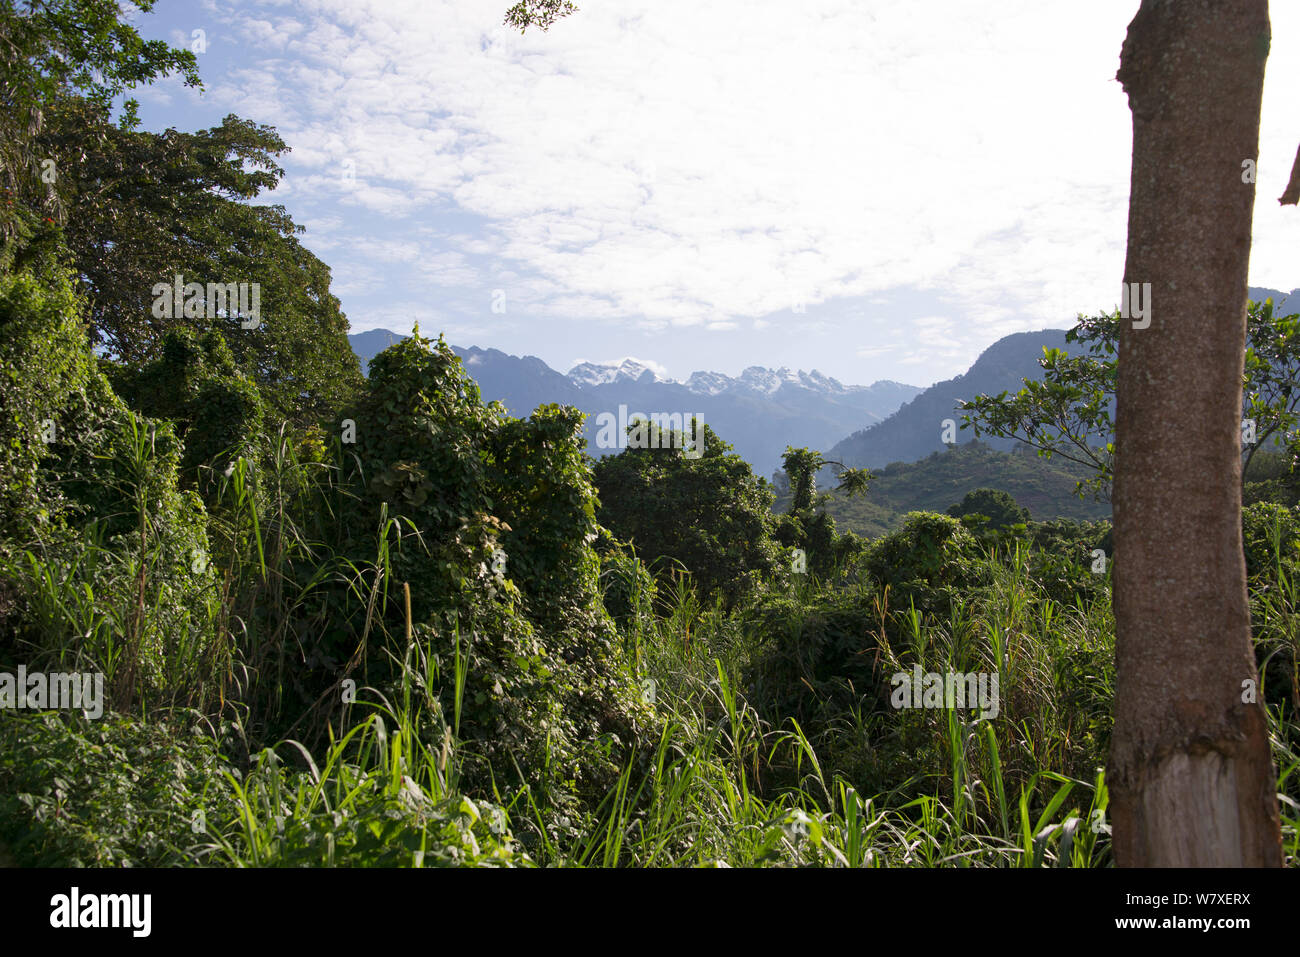 Blick über montane Regenwald in Richtung Punkt Magerita, Virunga National Park UNESCO Welterbe, Demokratische Republik Kongo, Februar 2012. Stockfoto